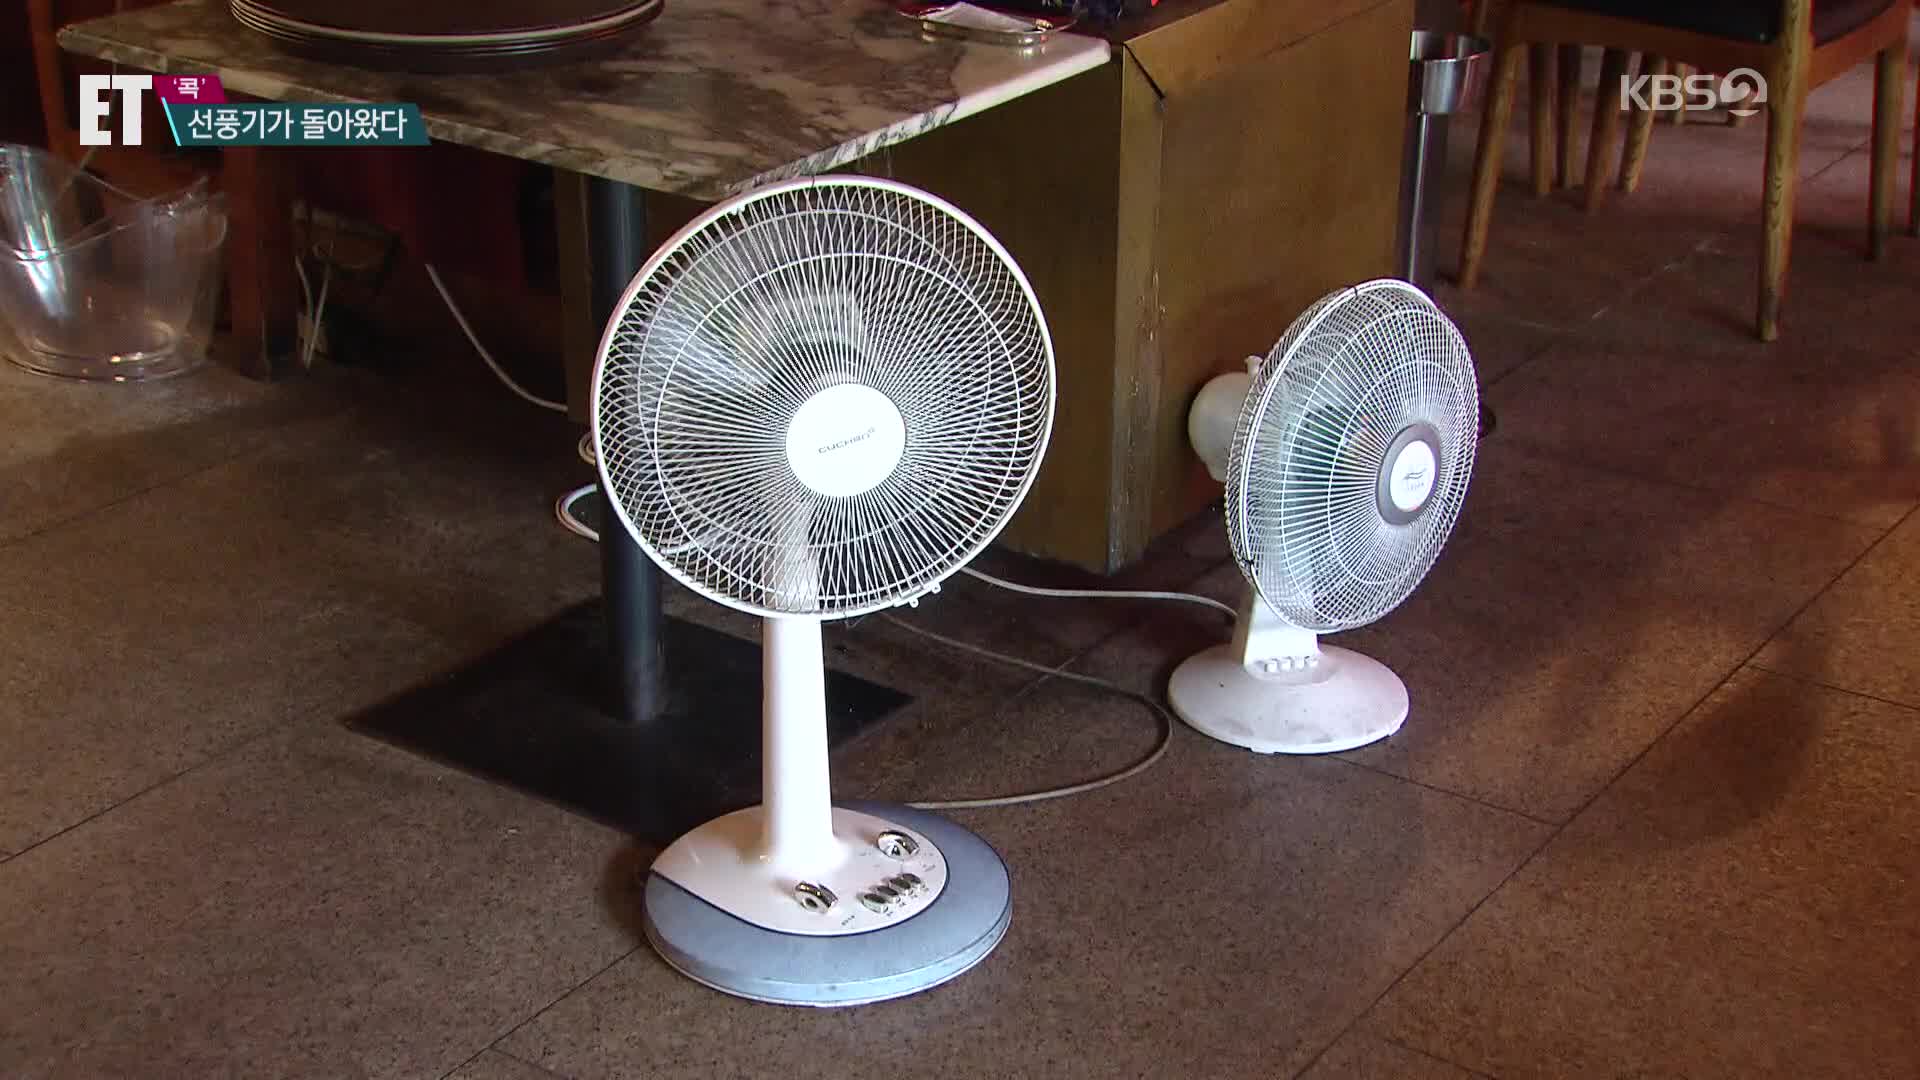 [ET] 태국 낮기온 45도·베트남 44도…펄펄 끓는 날씨에 날개 단 ‘선풍기’